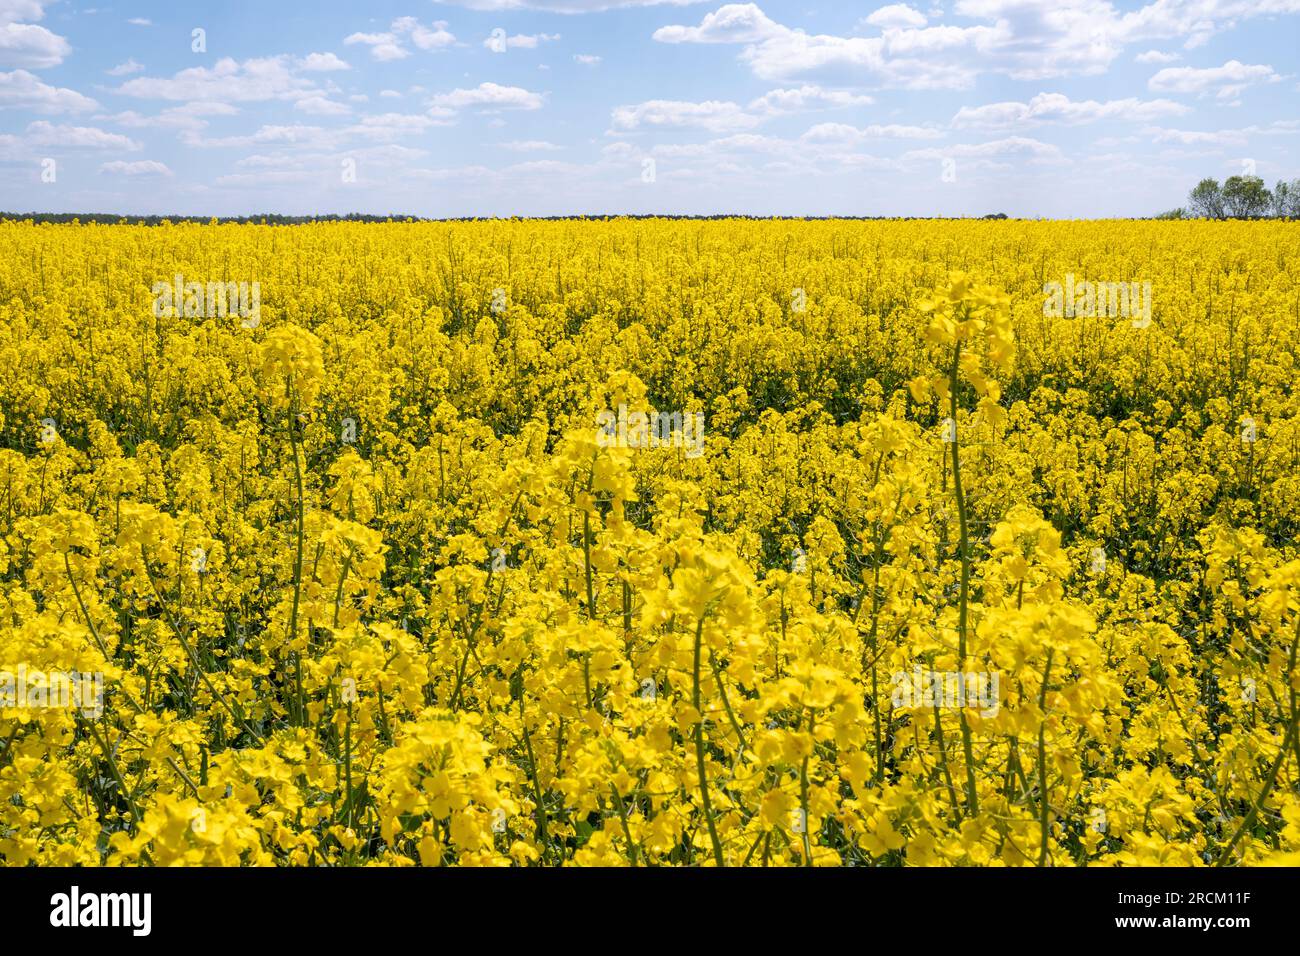 Un champ jaune de sarrasin à fleurs contre un ciel bleu avec des nuages Banque D'Images